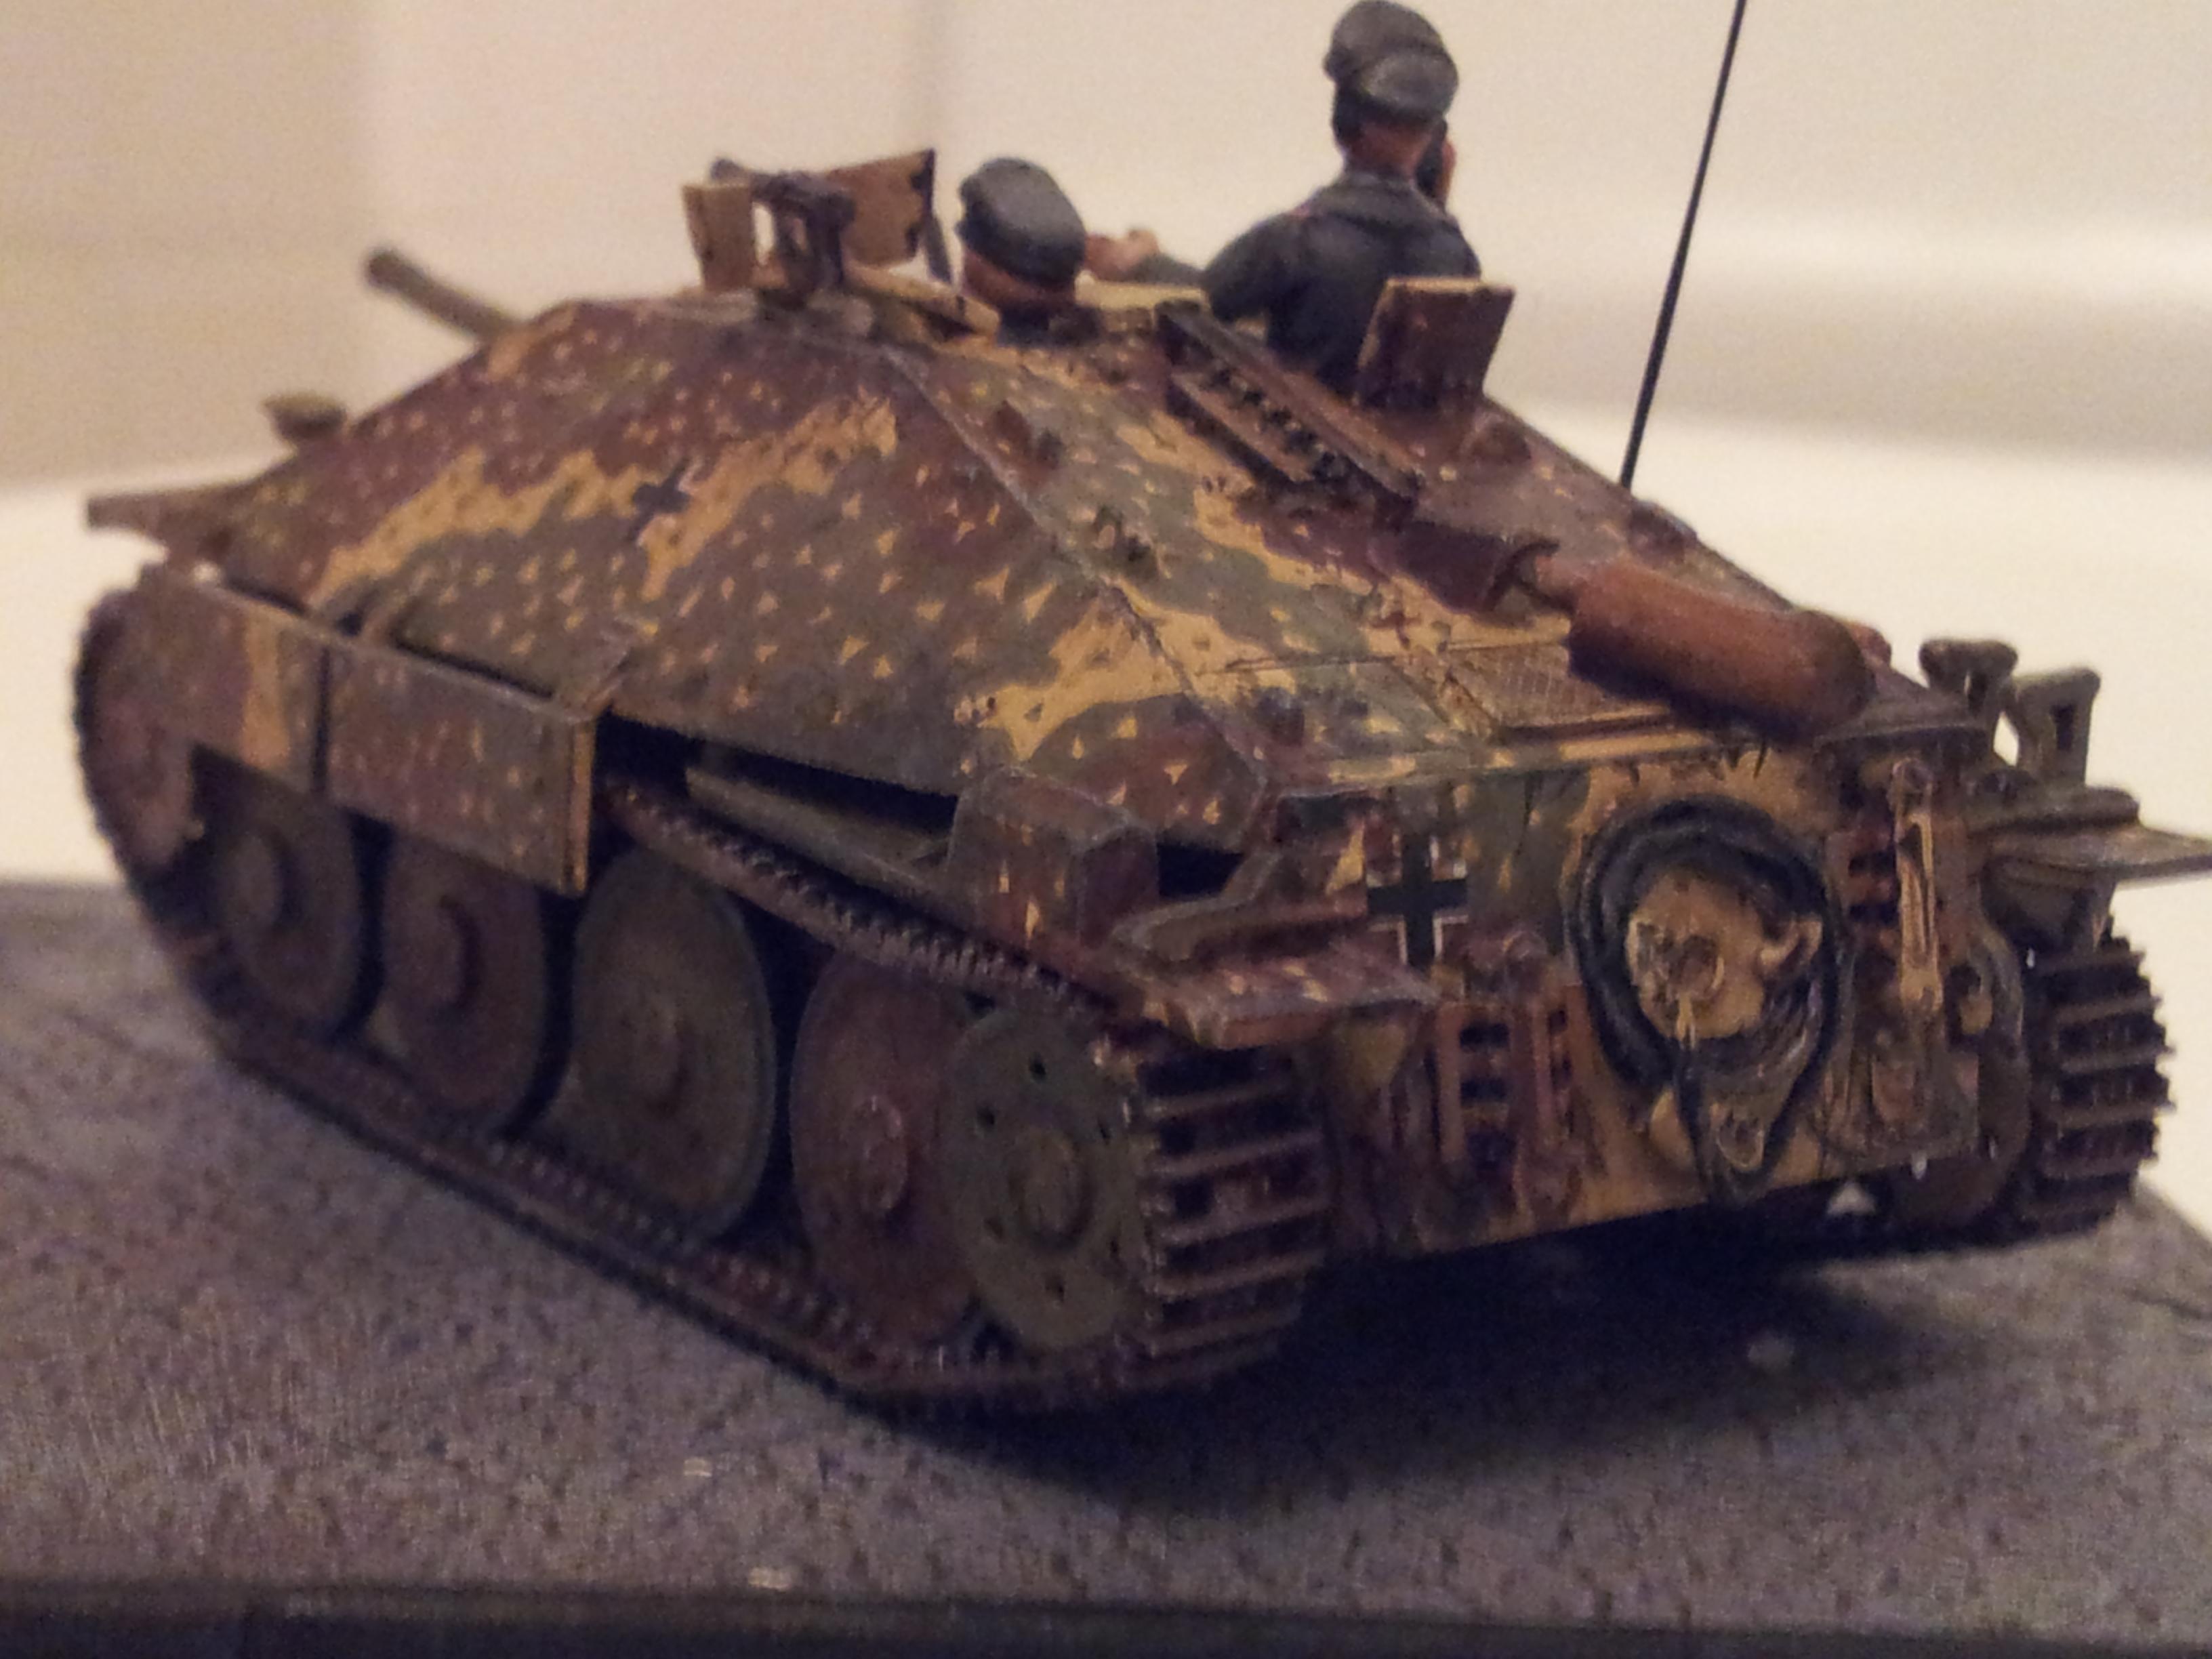 1/72, Camouflage, Germans, Hetzer, Panzer, World War 2